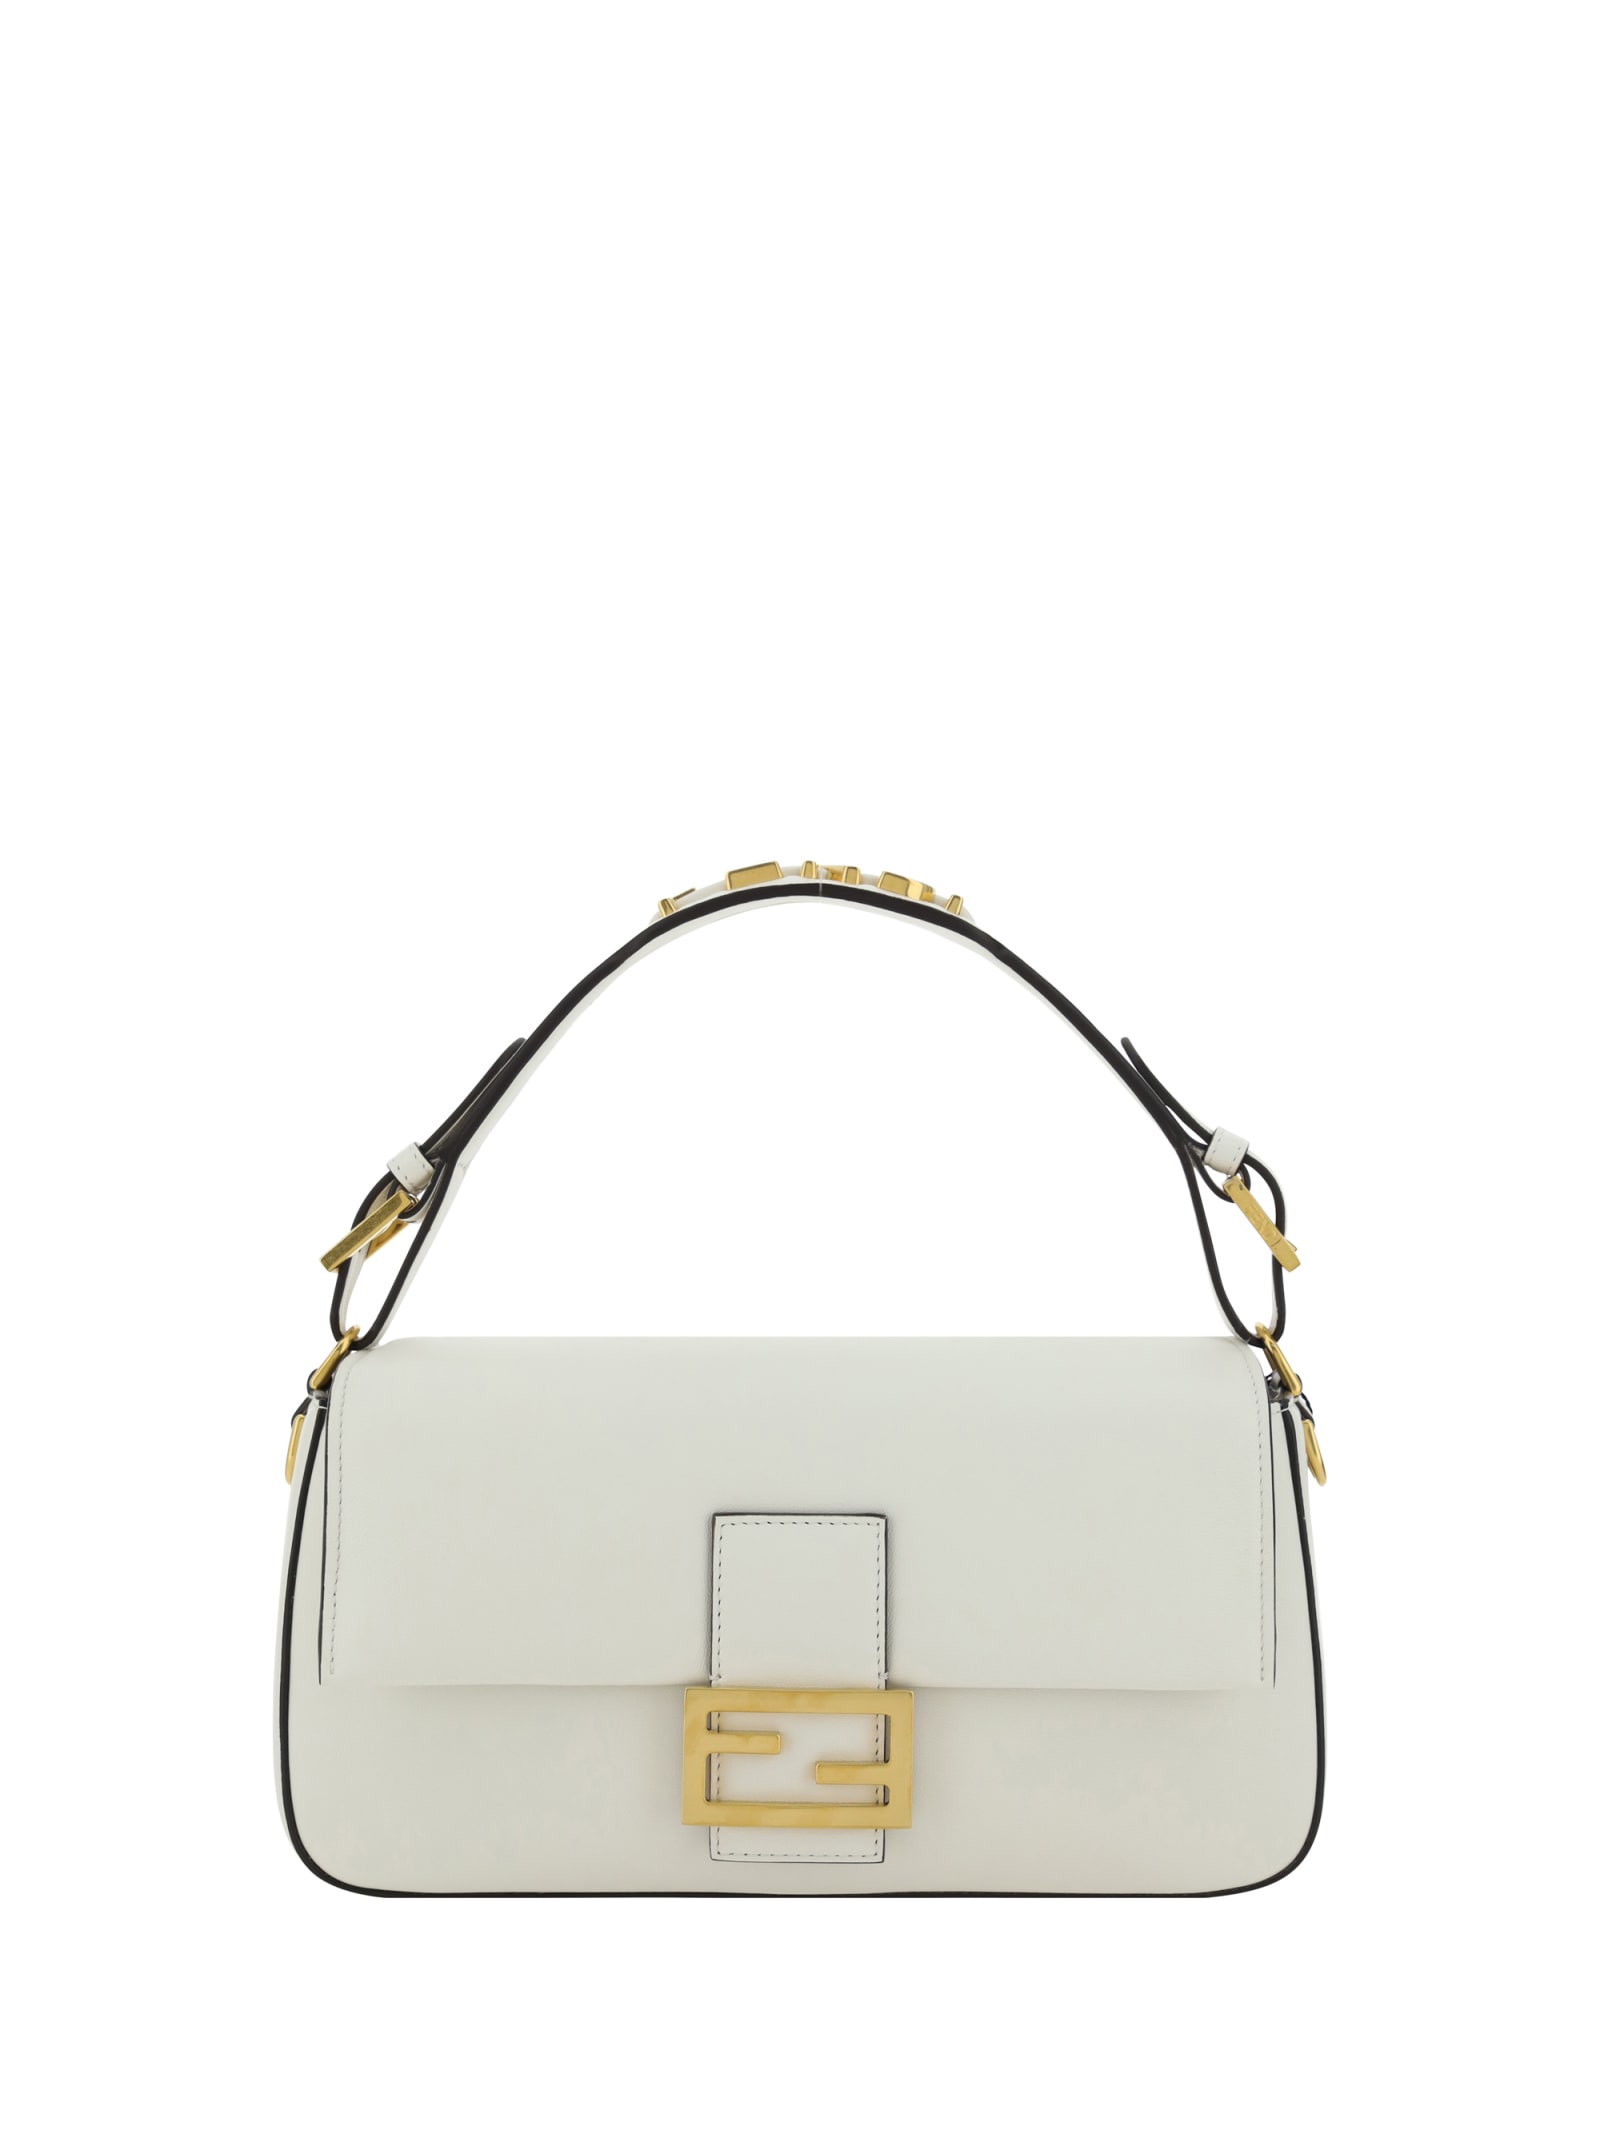 Fendi Baguette Handbag In White